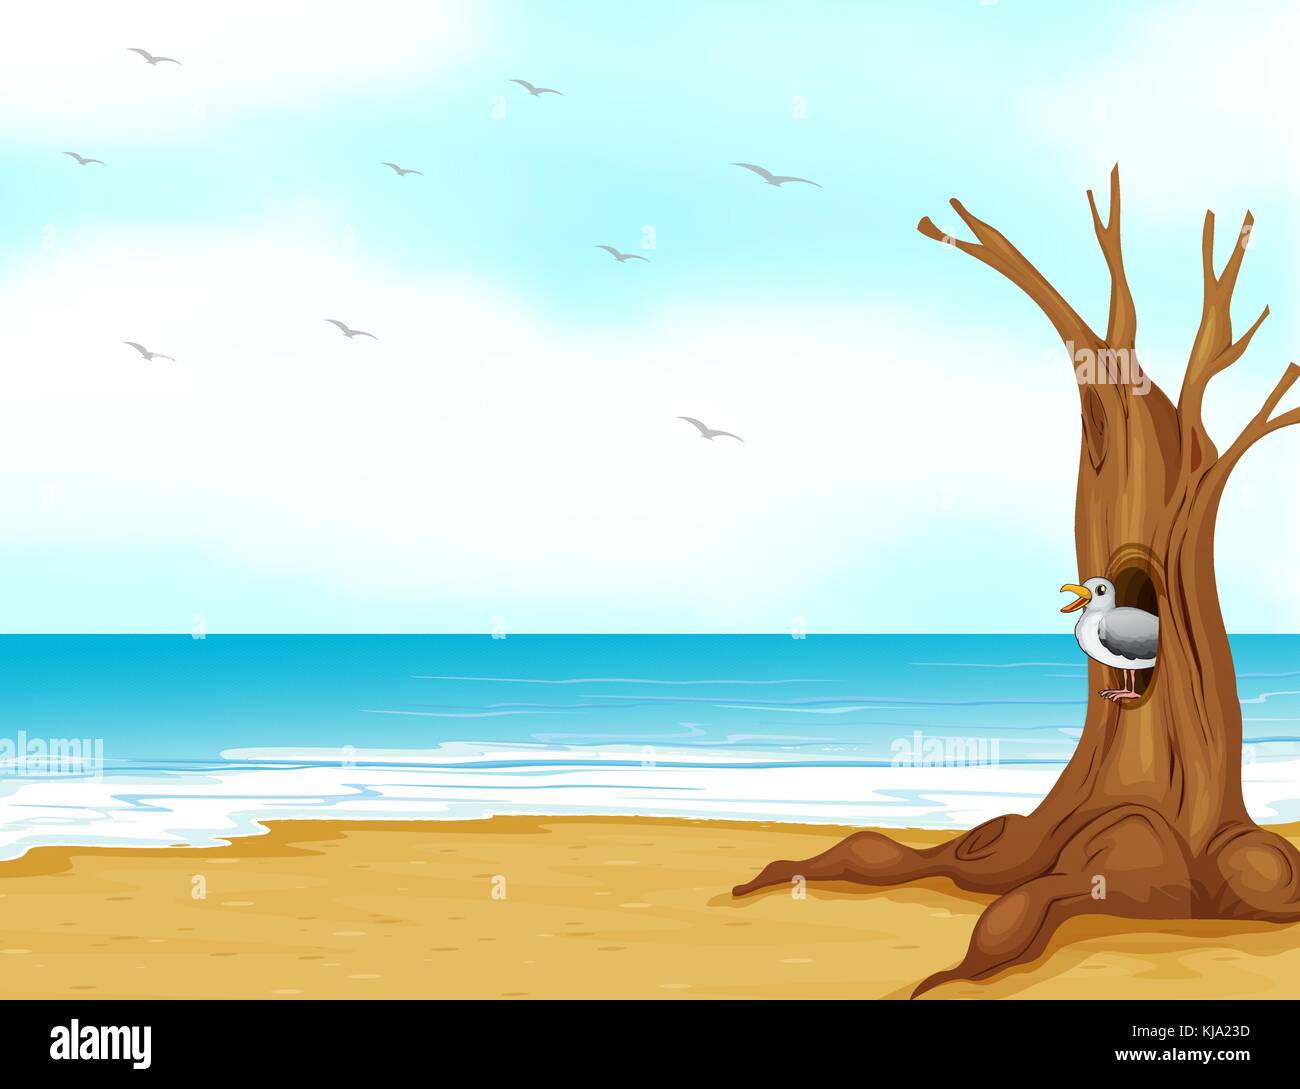 Ilustración de un ave en el interior del hueco del árbol en la orilla del mar Ilustración del Vector